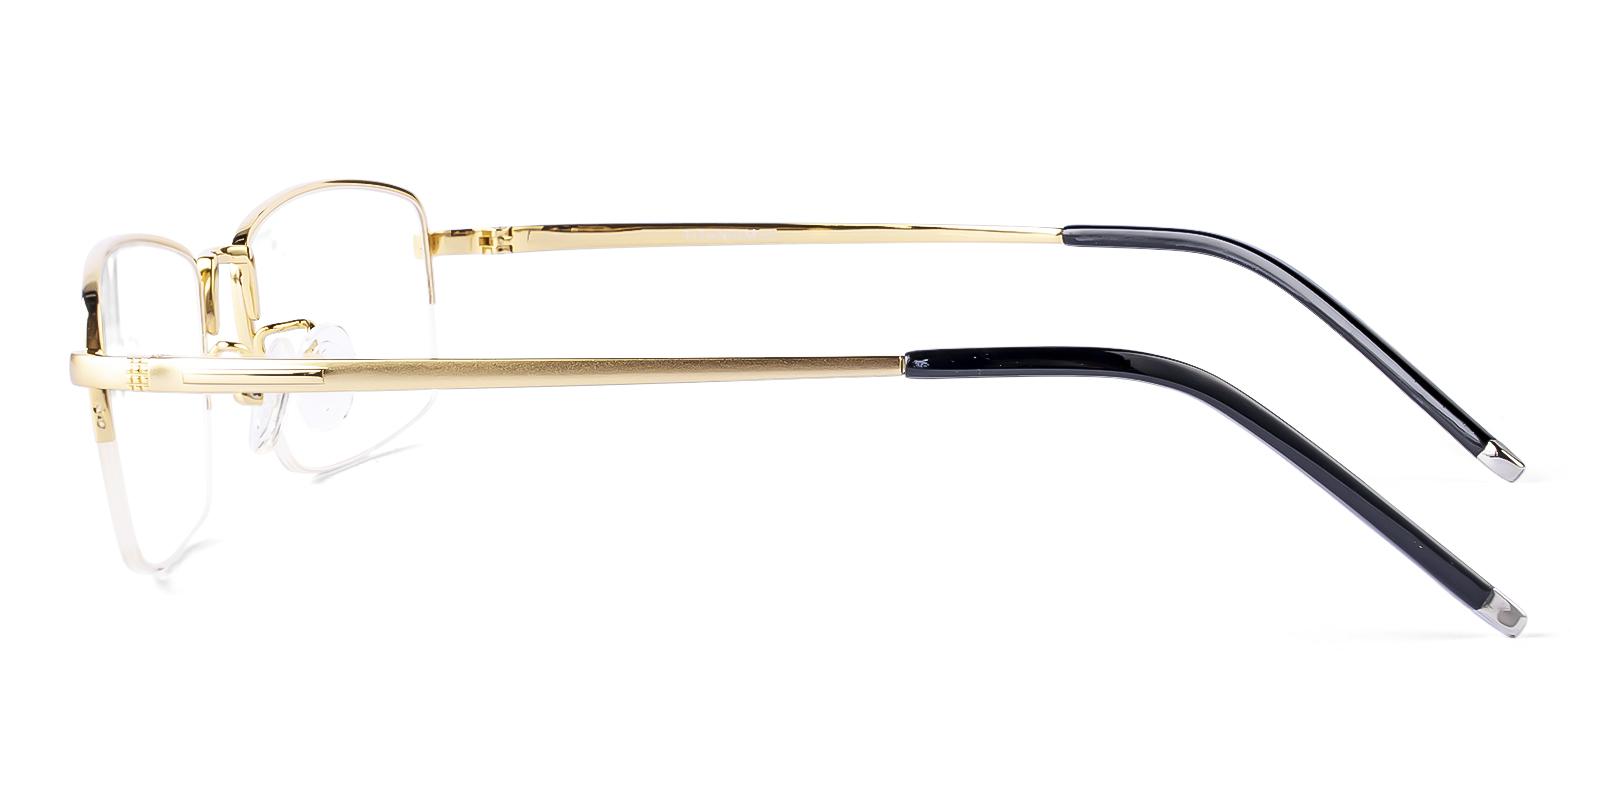 Gregics Gold Titanium Eyeglasses , NosePads Frames from ABBE Glasses